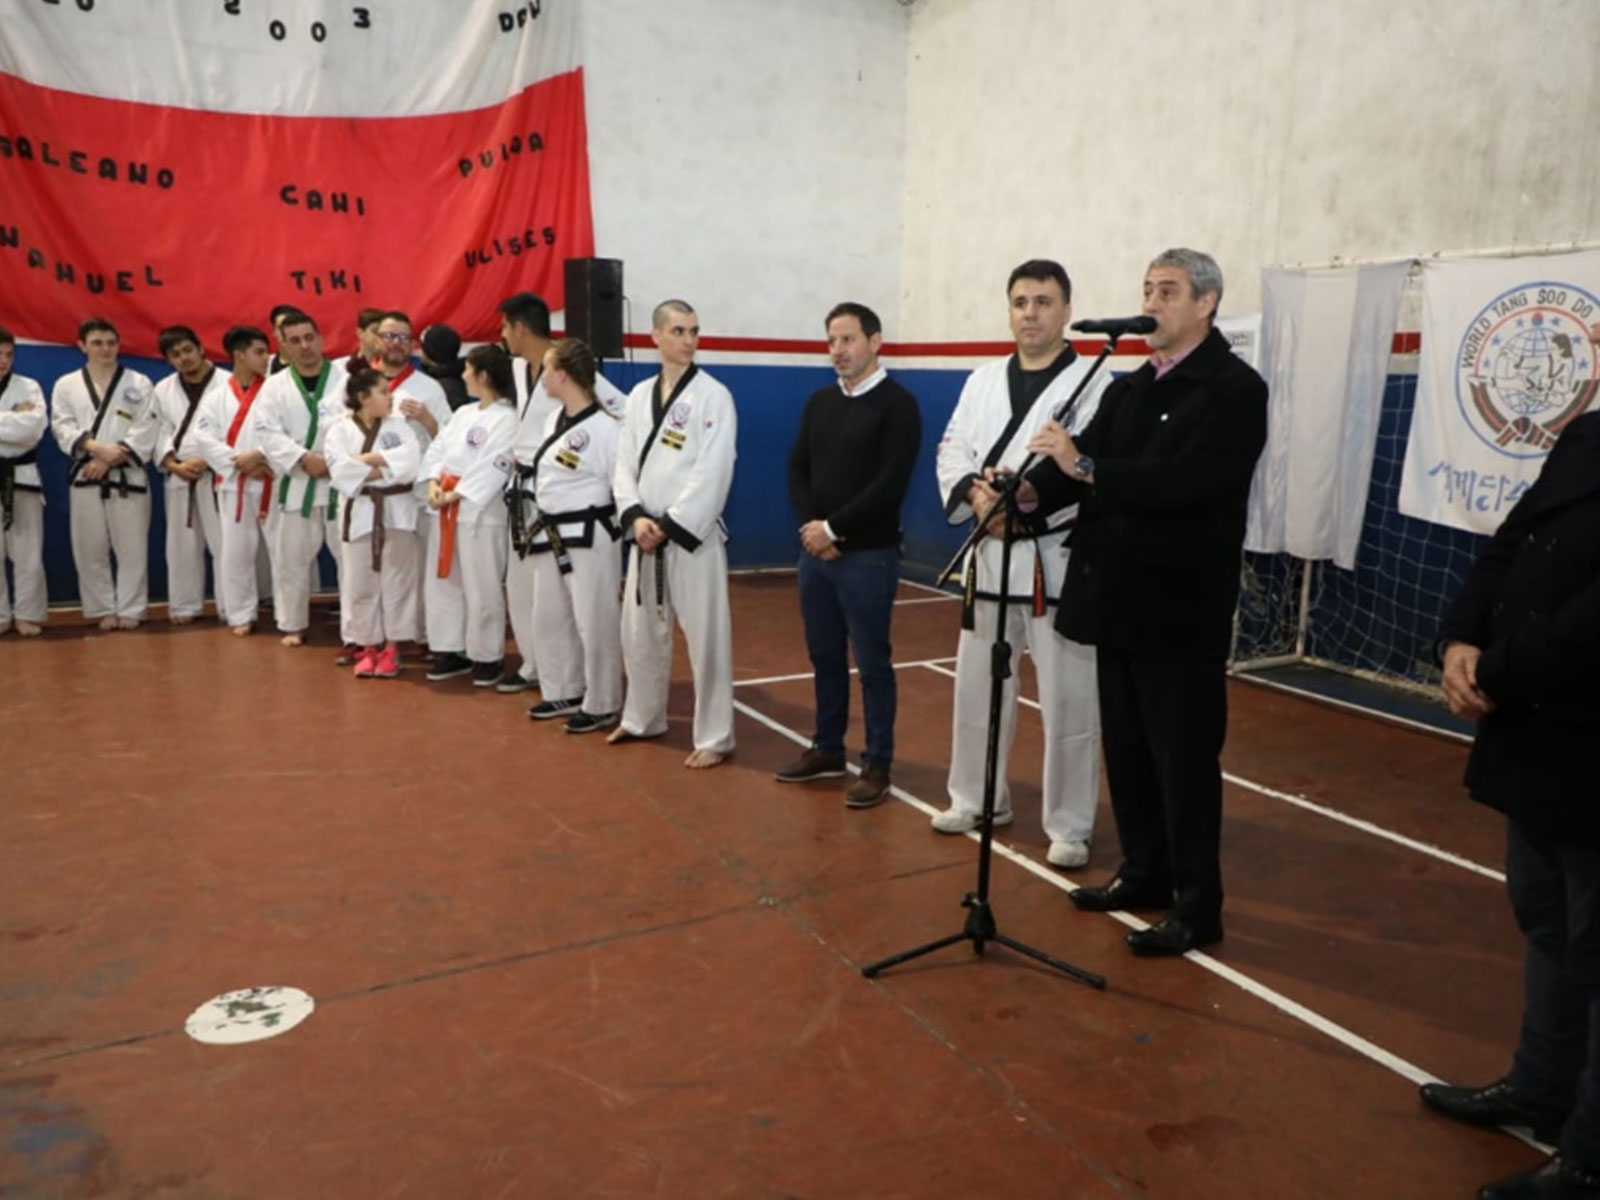 Avellaneda financia el viaje de deportistas al mundial de karate